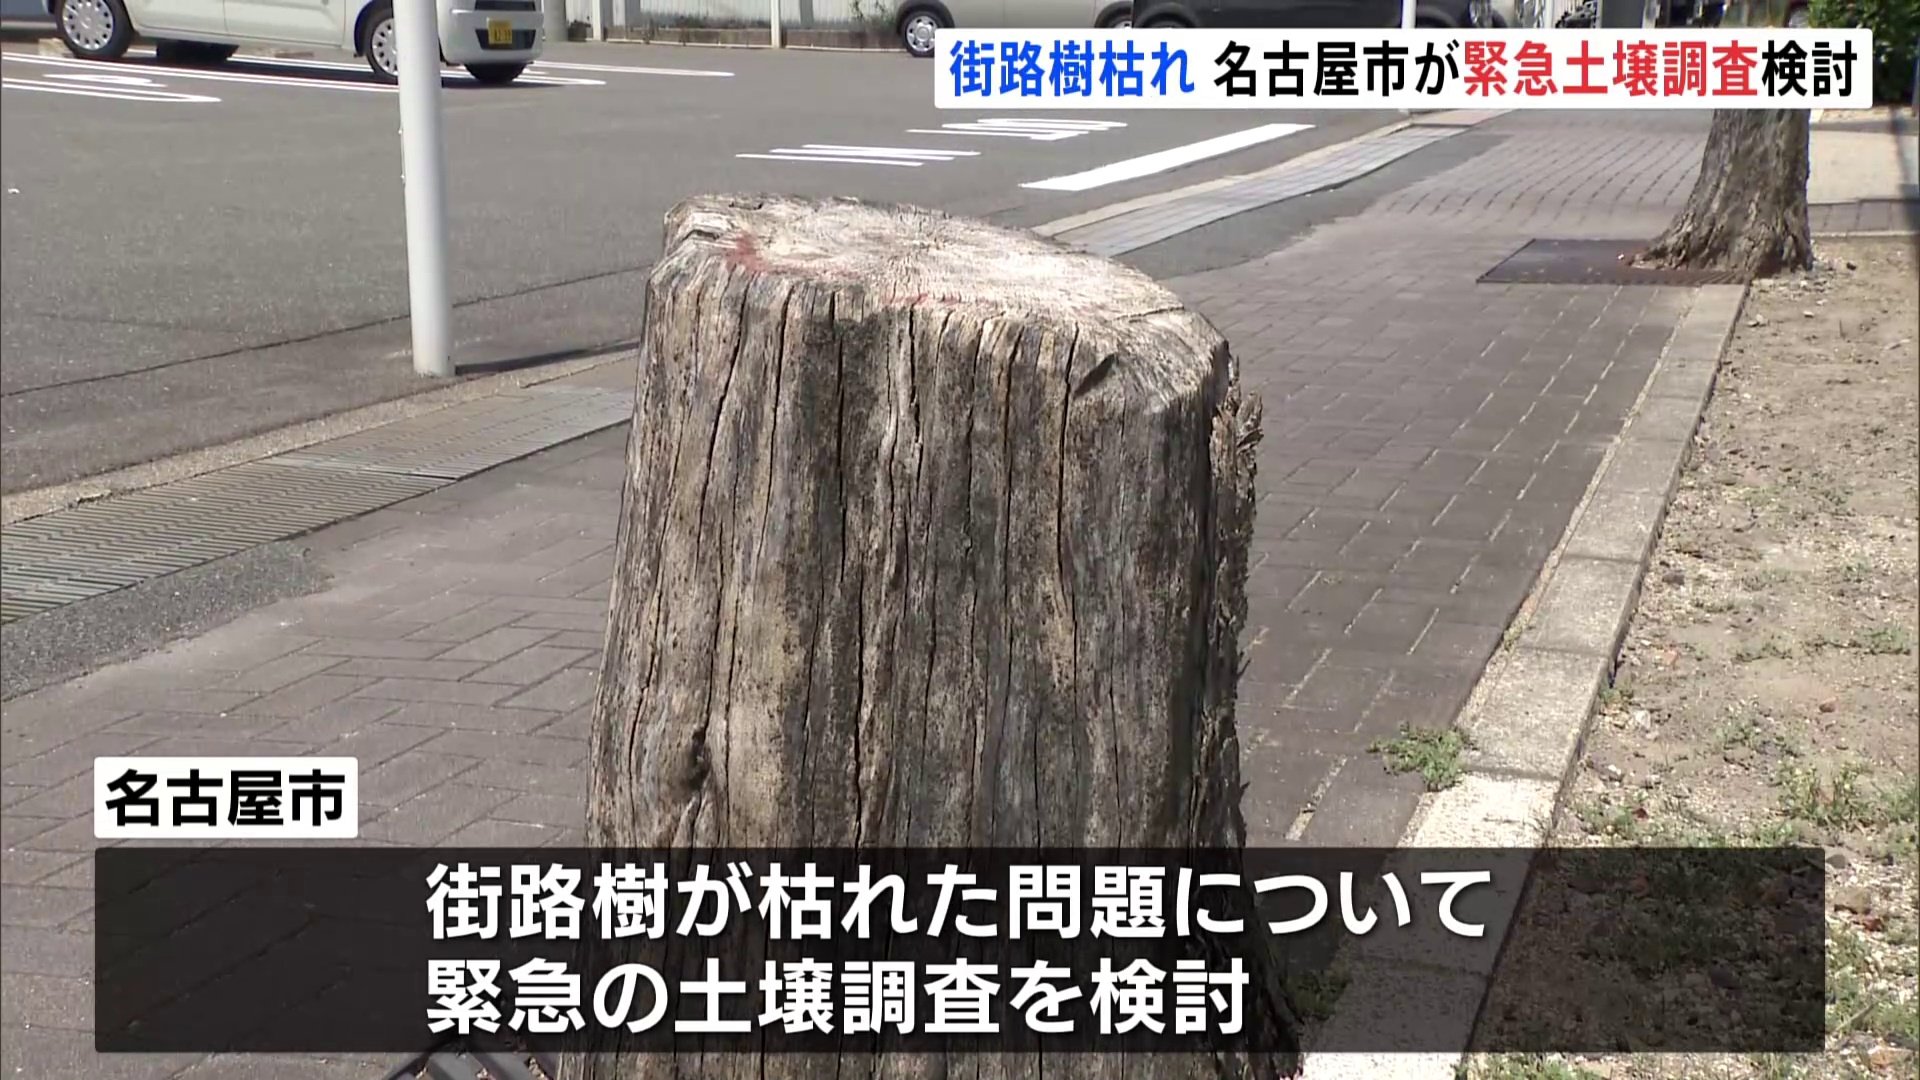 ビッグモーター　店舗前の街路樹枯れ　名古屋市が緊急土壌調査検討